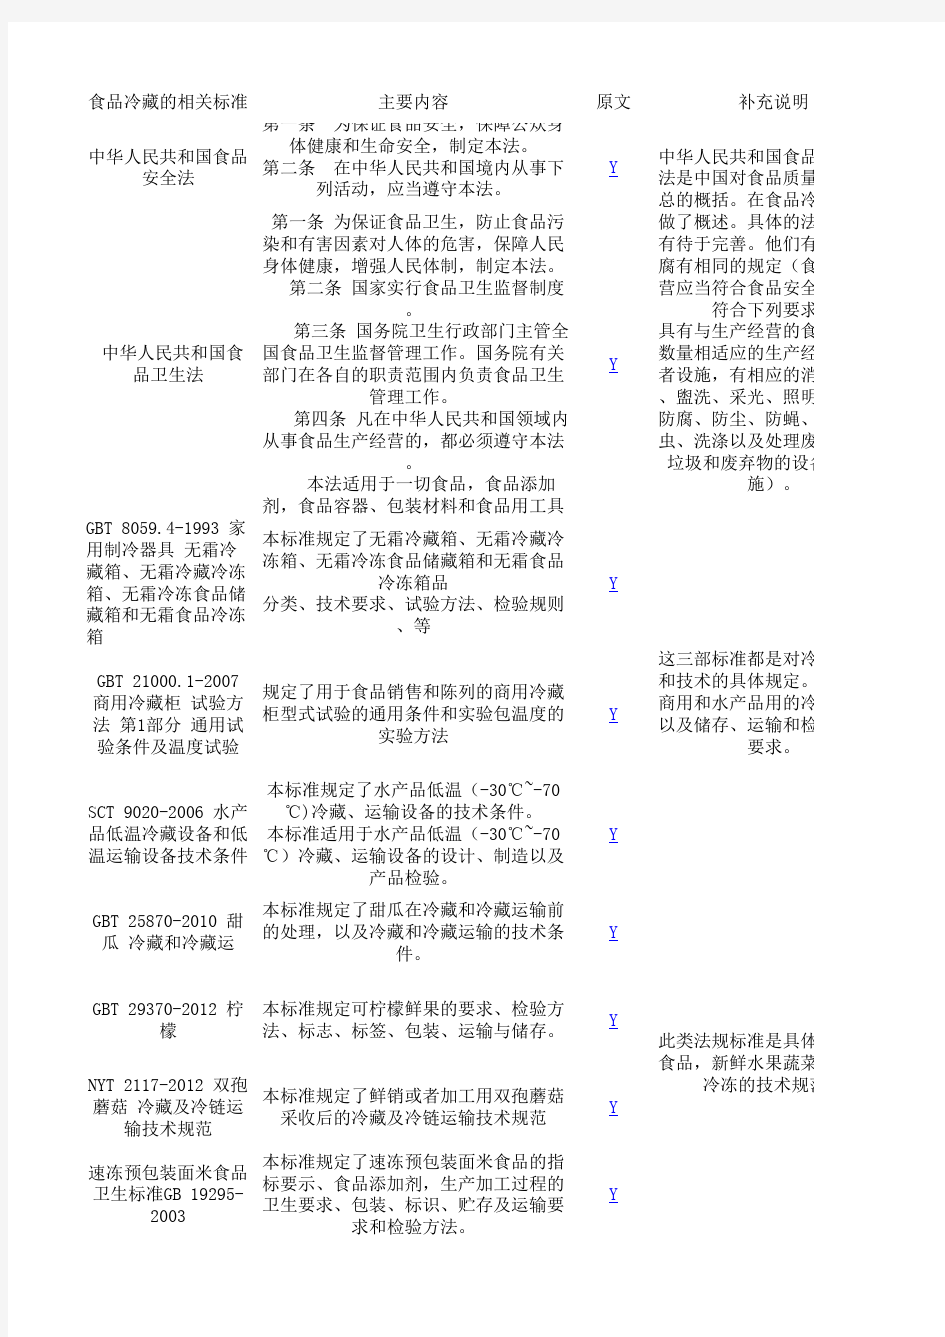 中国冷藏链法律法规(补充版)